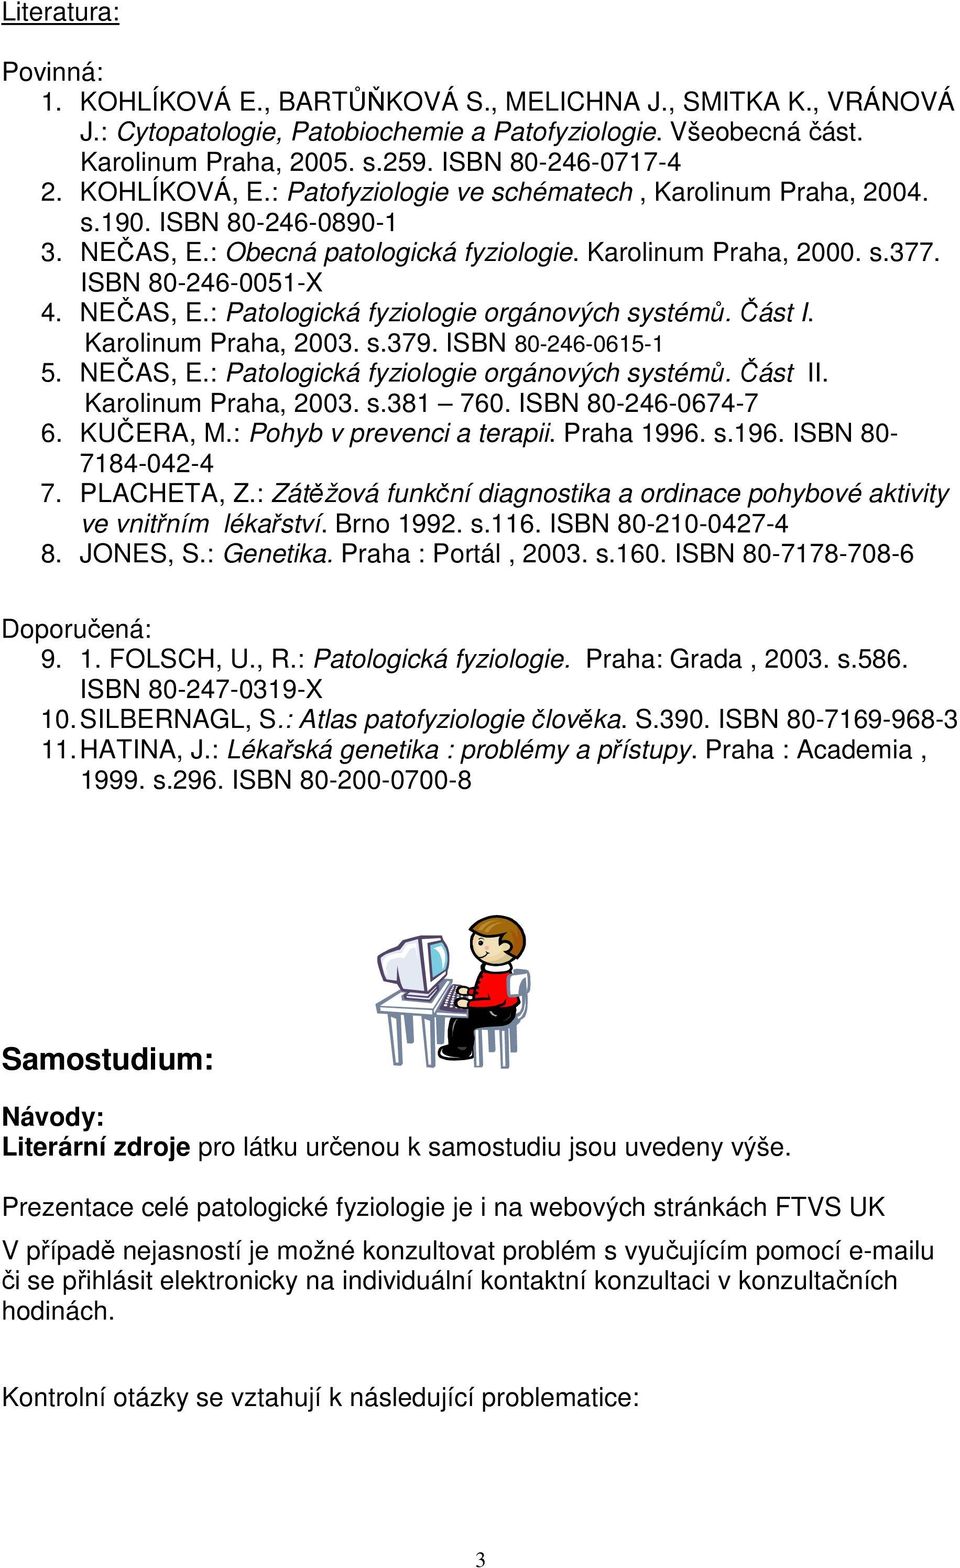 ISBN 80-246-0051-X 4. NEČAS, E.: Patologická fyziologie orgánových systémů. Část I. Karolinum Praha, 2003. s.379. ISBN 80-246-0615-1 5. NEČAS, E.: Patologická fyziologie orgánových systémů. Část II.